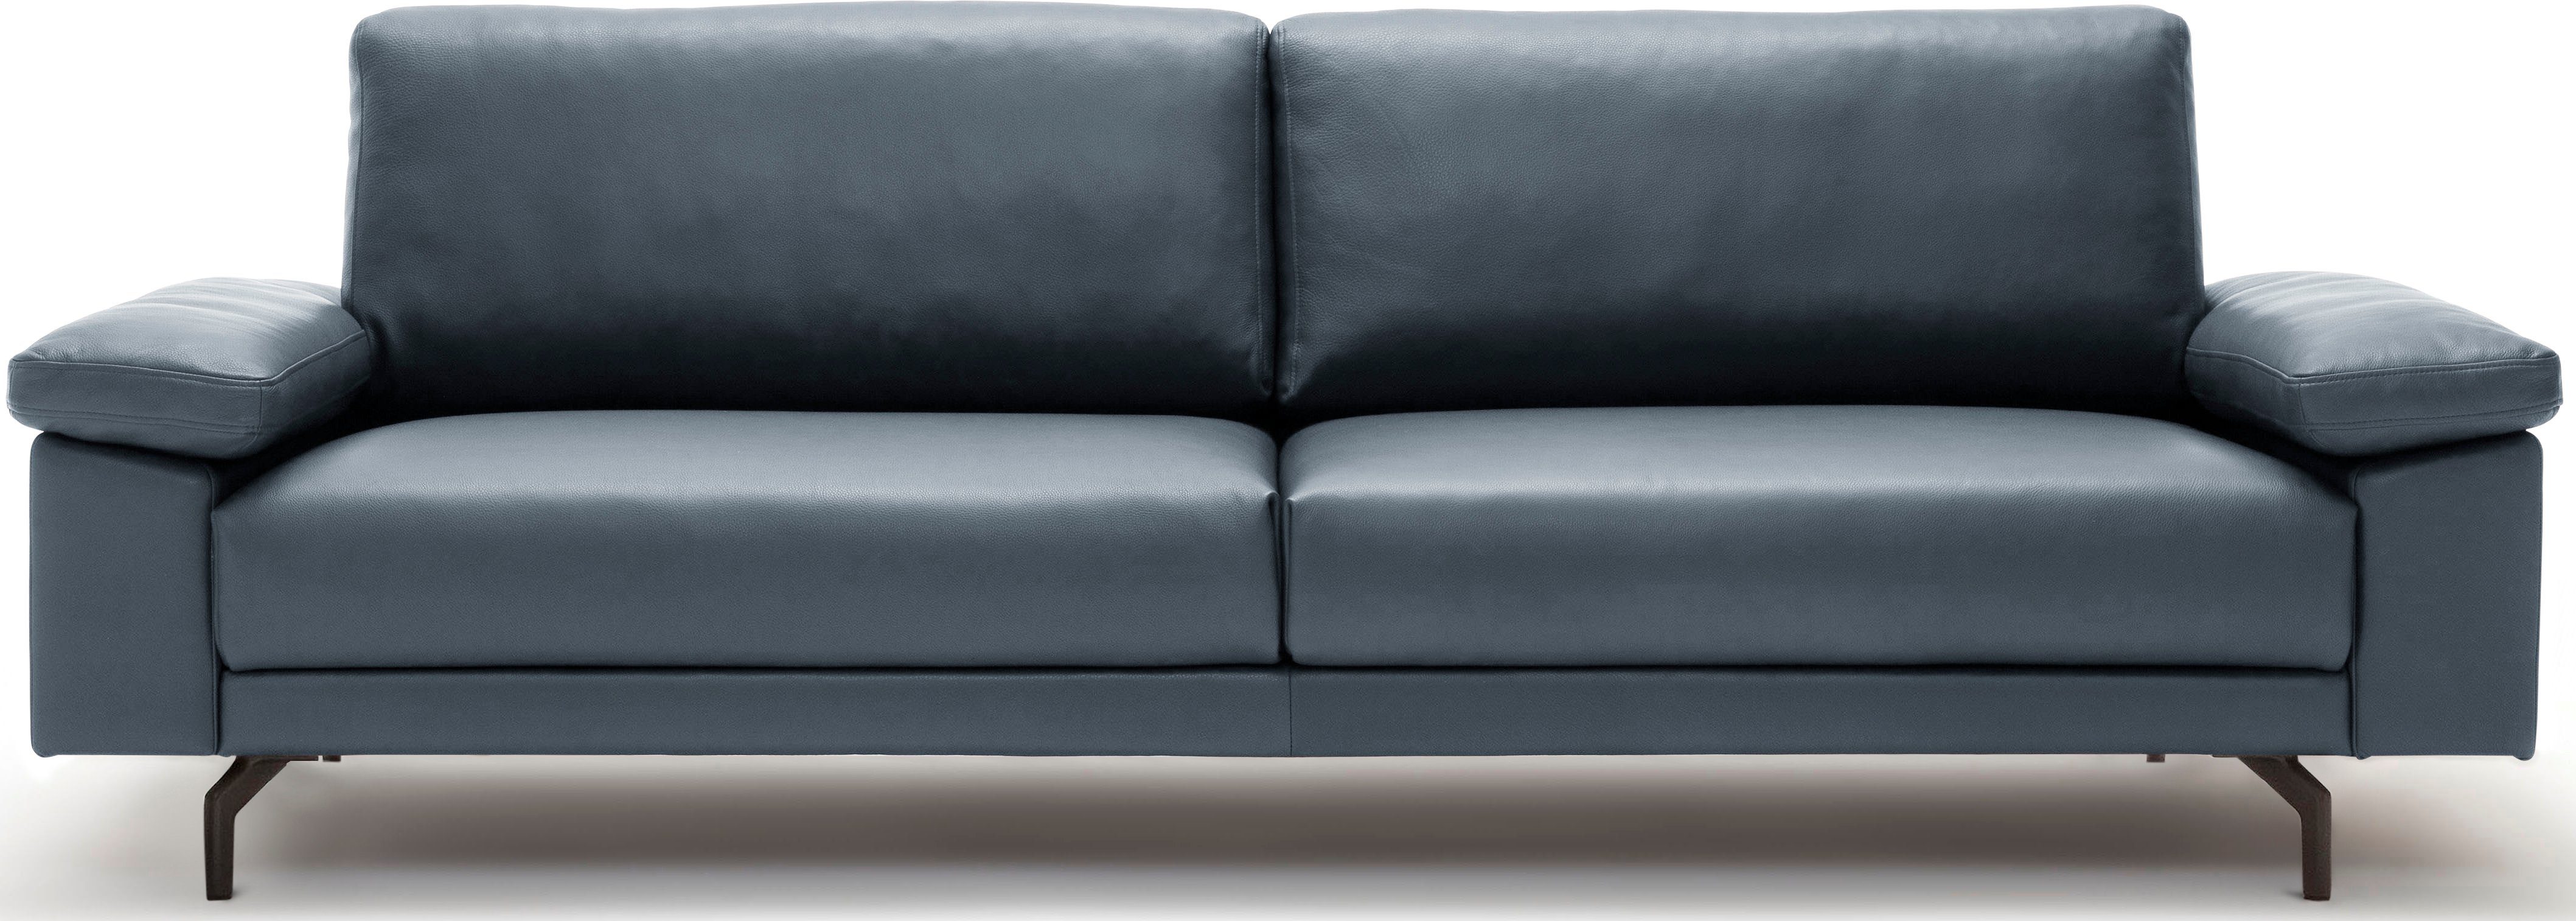 sofa 2,5-Sitzer hülsta